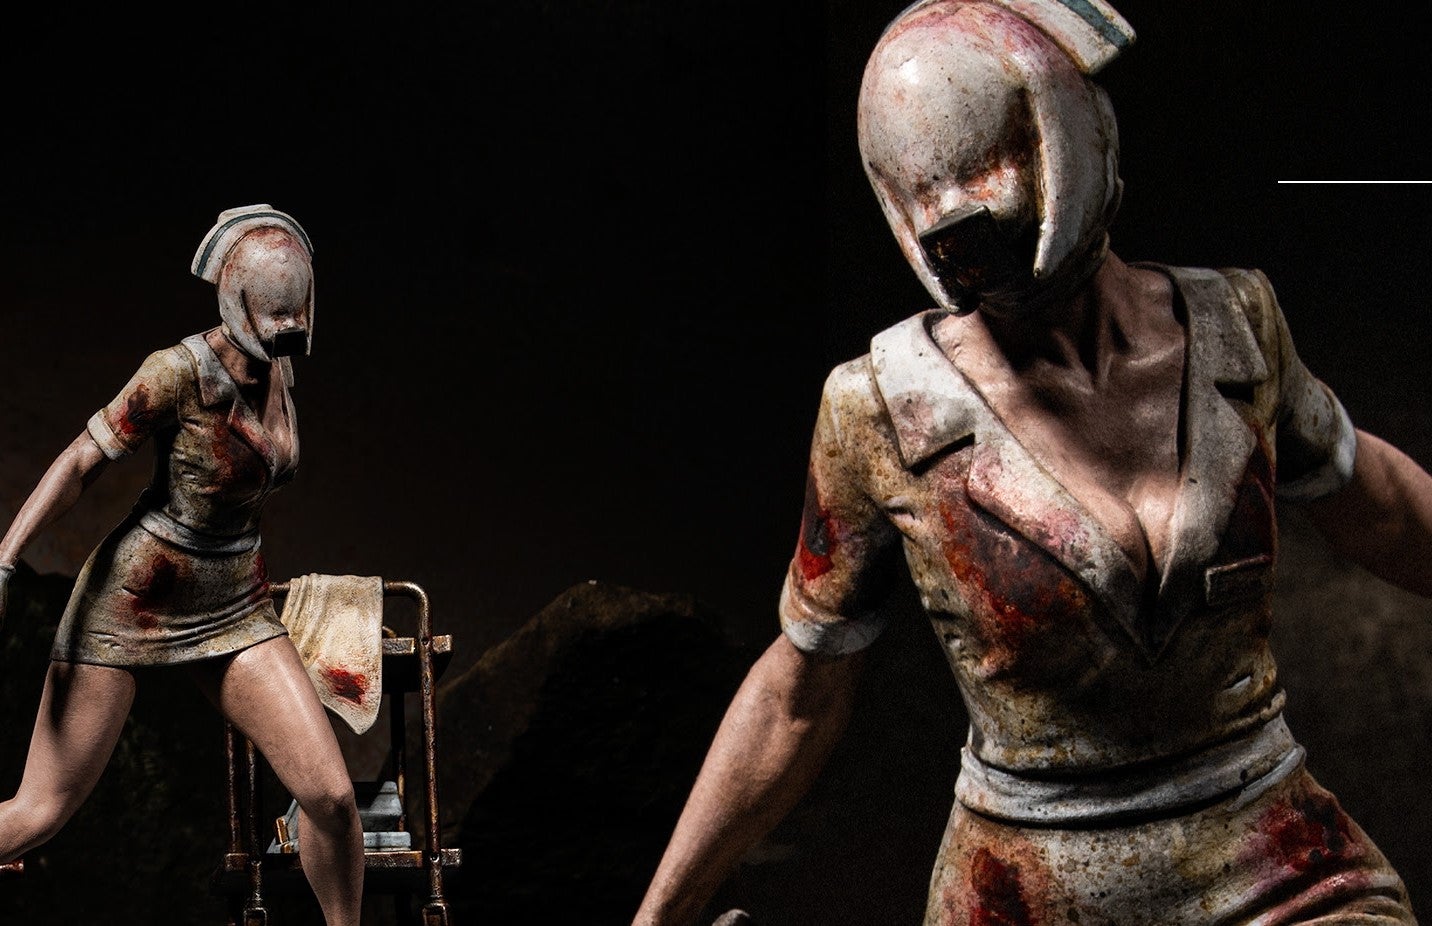 Bilder zu Silent Hill 2: Die offizielle Statue der Bubble Head Nurse weckt entsetzliches Horror-Fieber